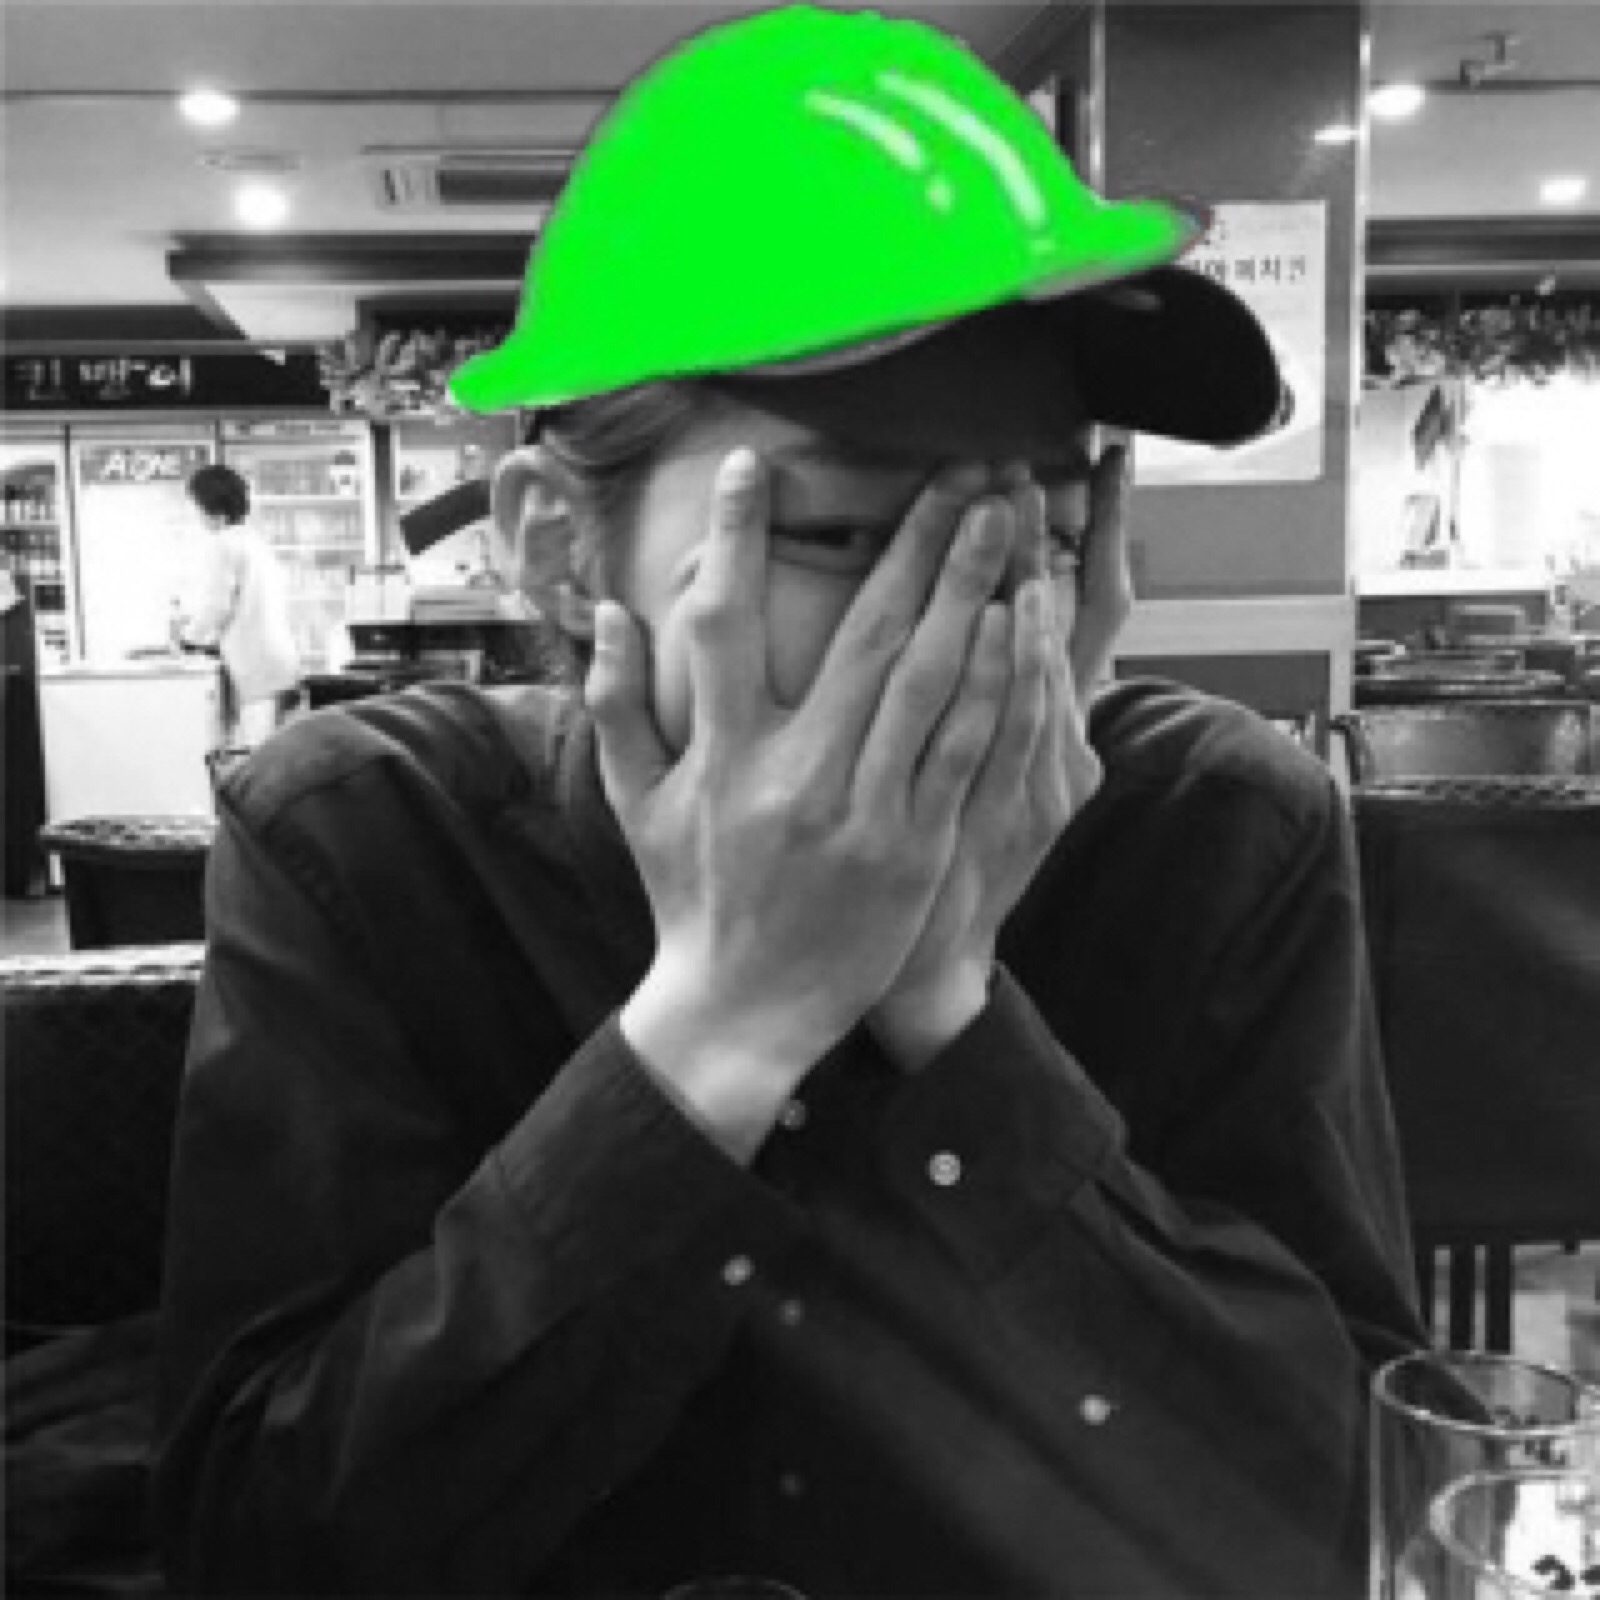 绿帽头像 qq图片